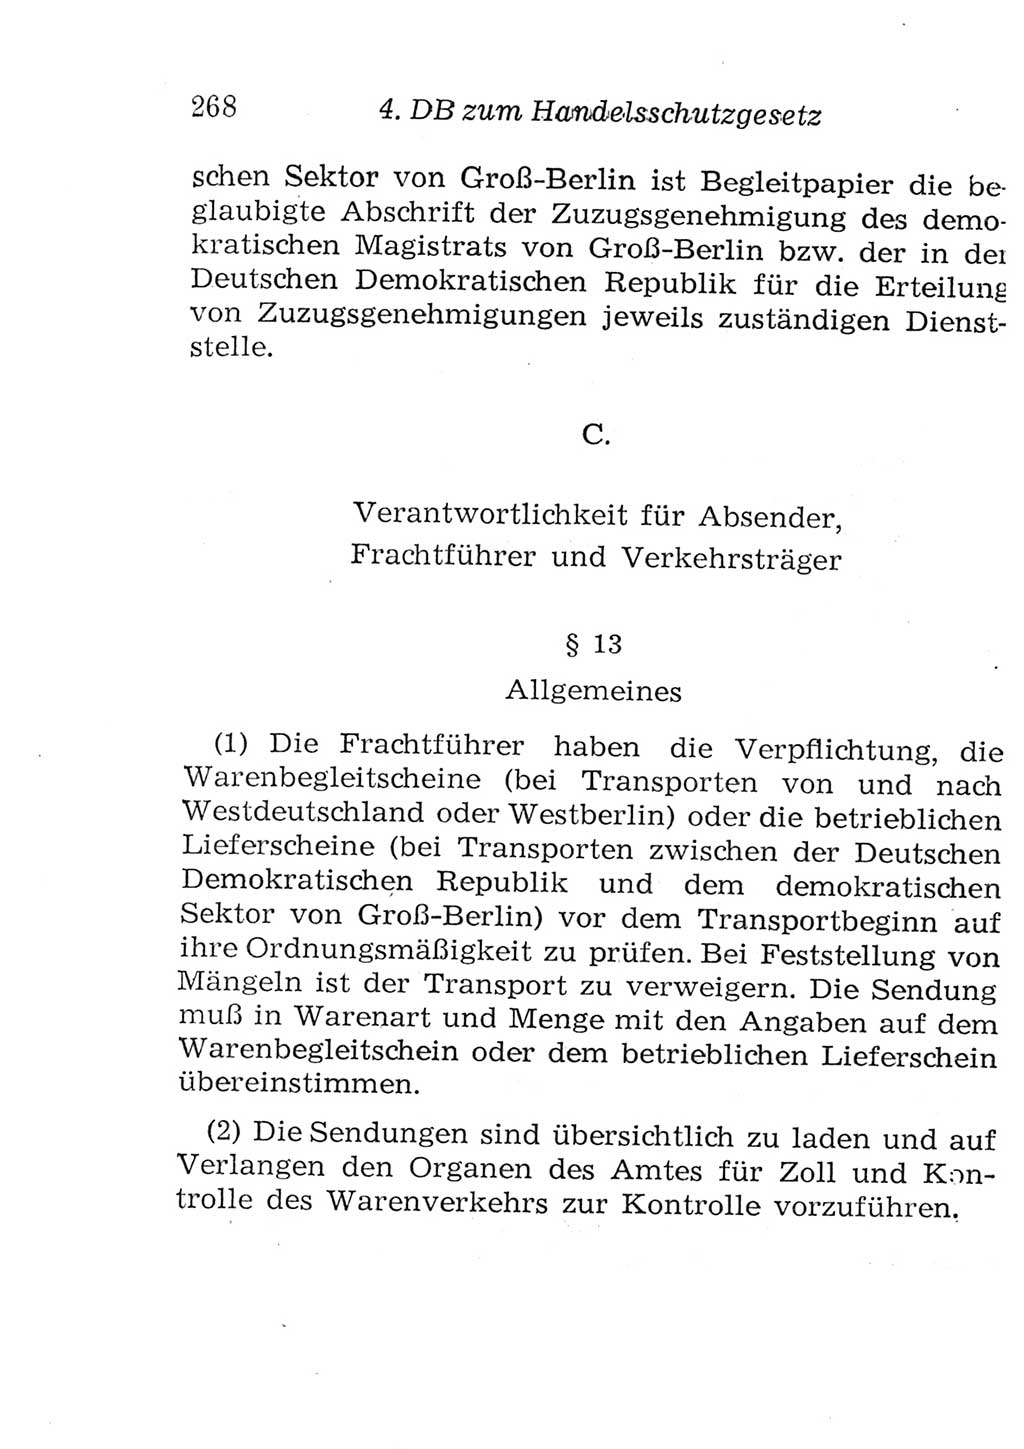 Strafgesetzbuch (StGB) und andere Strafgesetze [Deutsche Demokratische Republik (DDR)] 1957, Seite 268 (StGB Strafges. DDR 1957, S. 268)